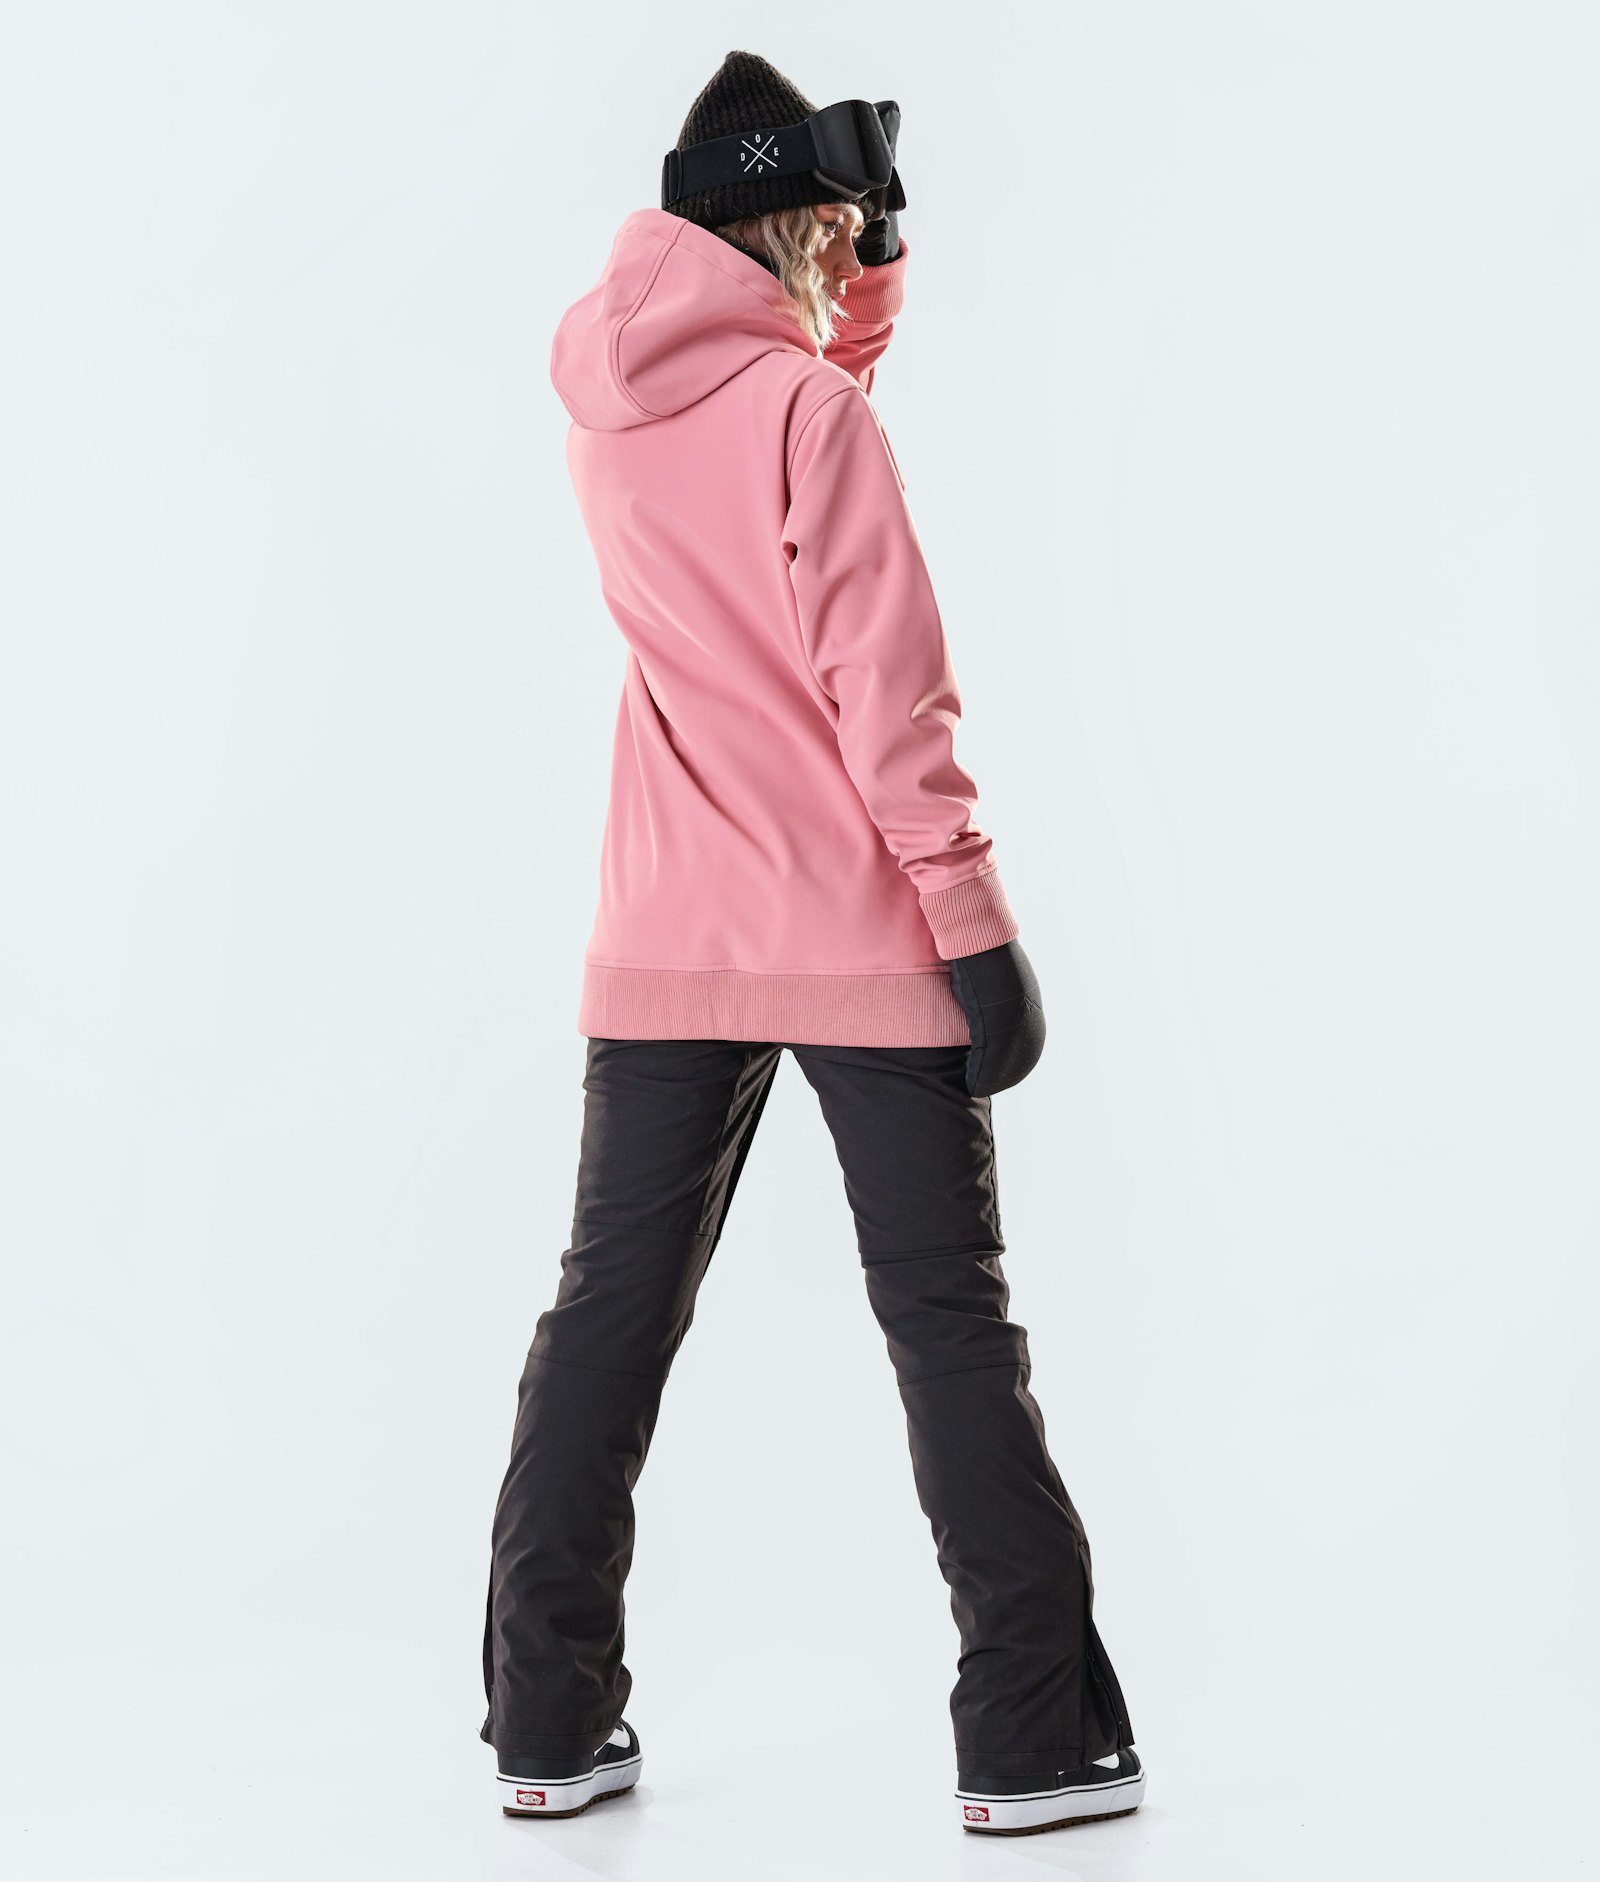 Dope Yeti W 10k Snowboard jas Dames EMB Pink